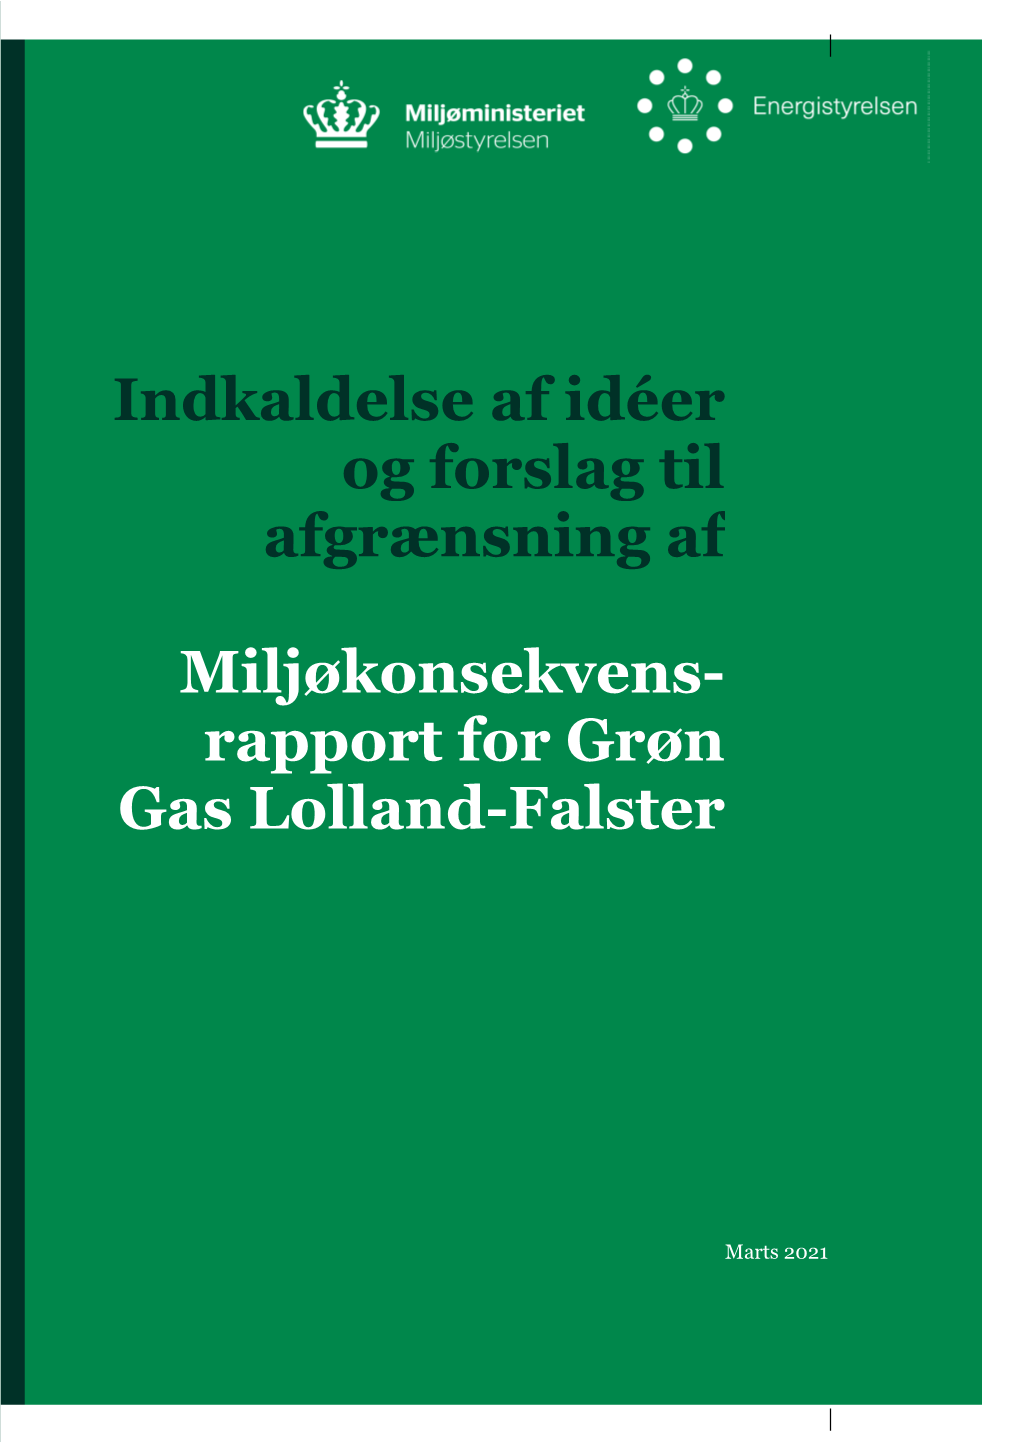 Miljøkonsekvens- Rapport for Grøn Gas Lolland-Falster